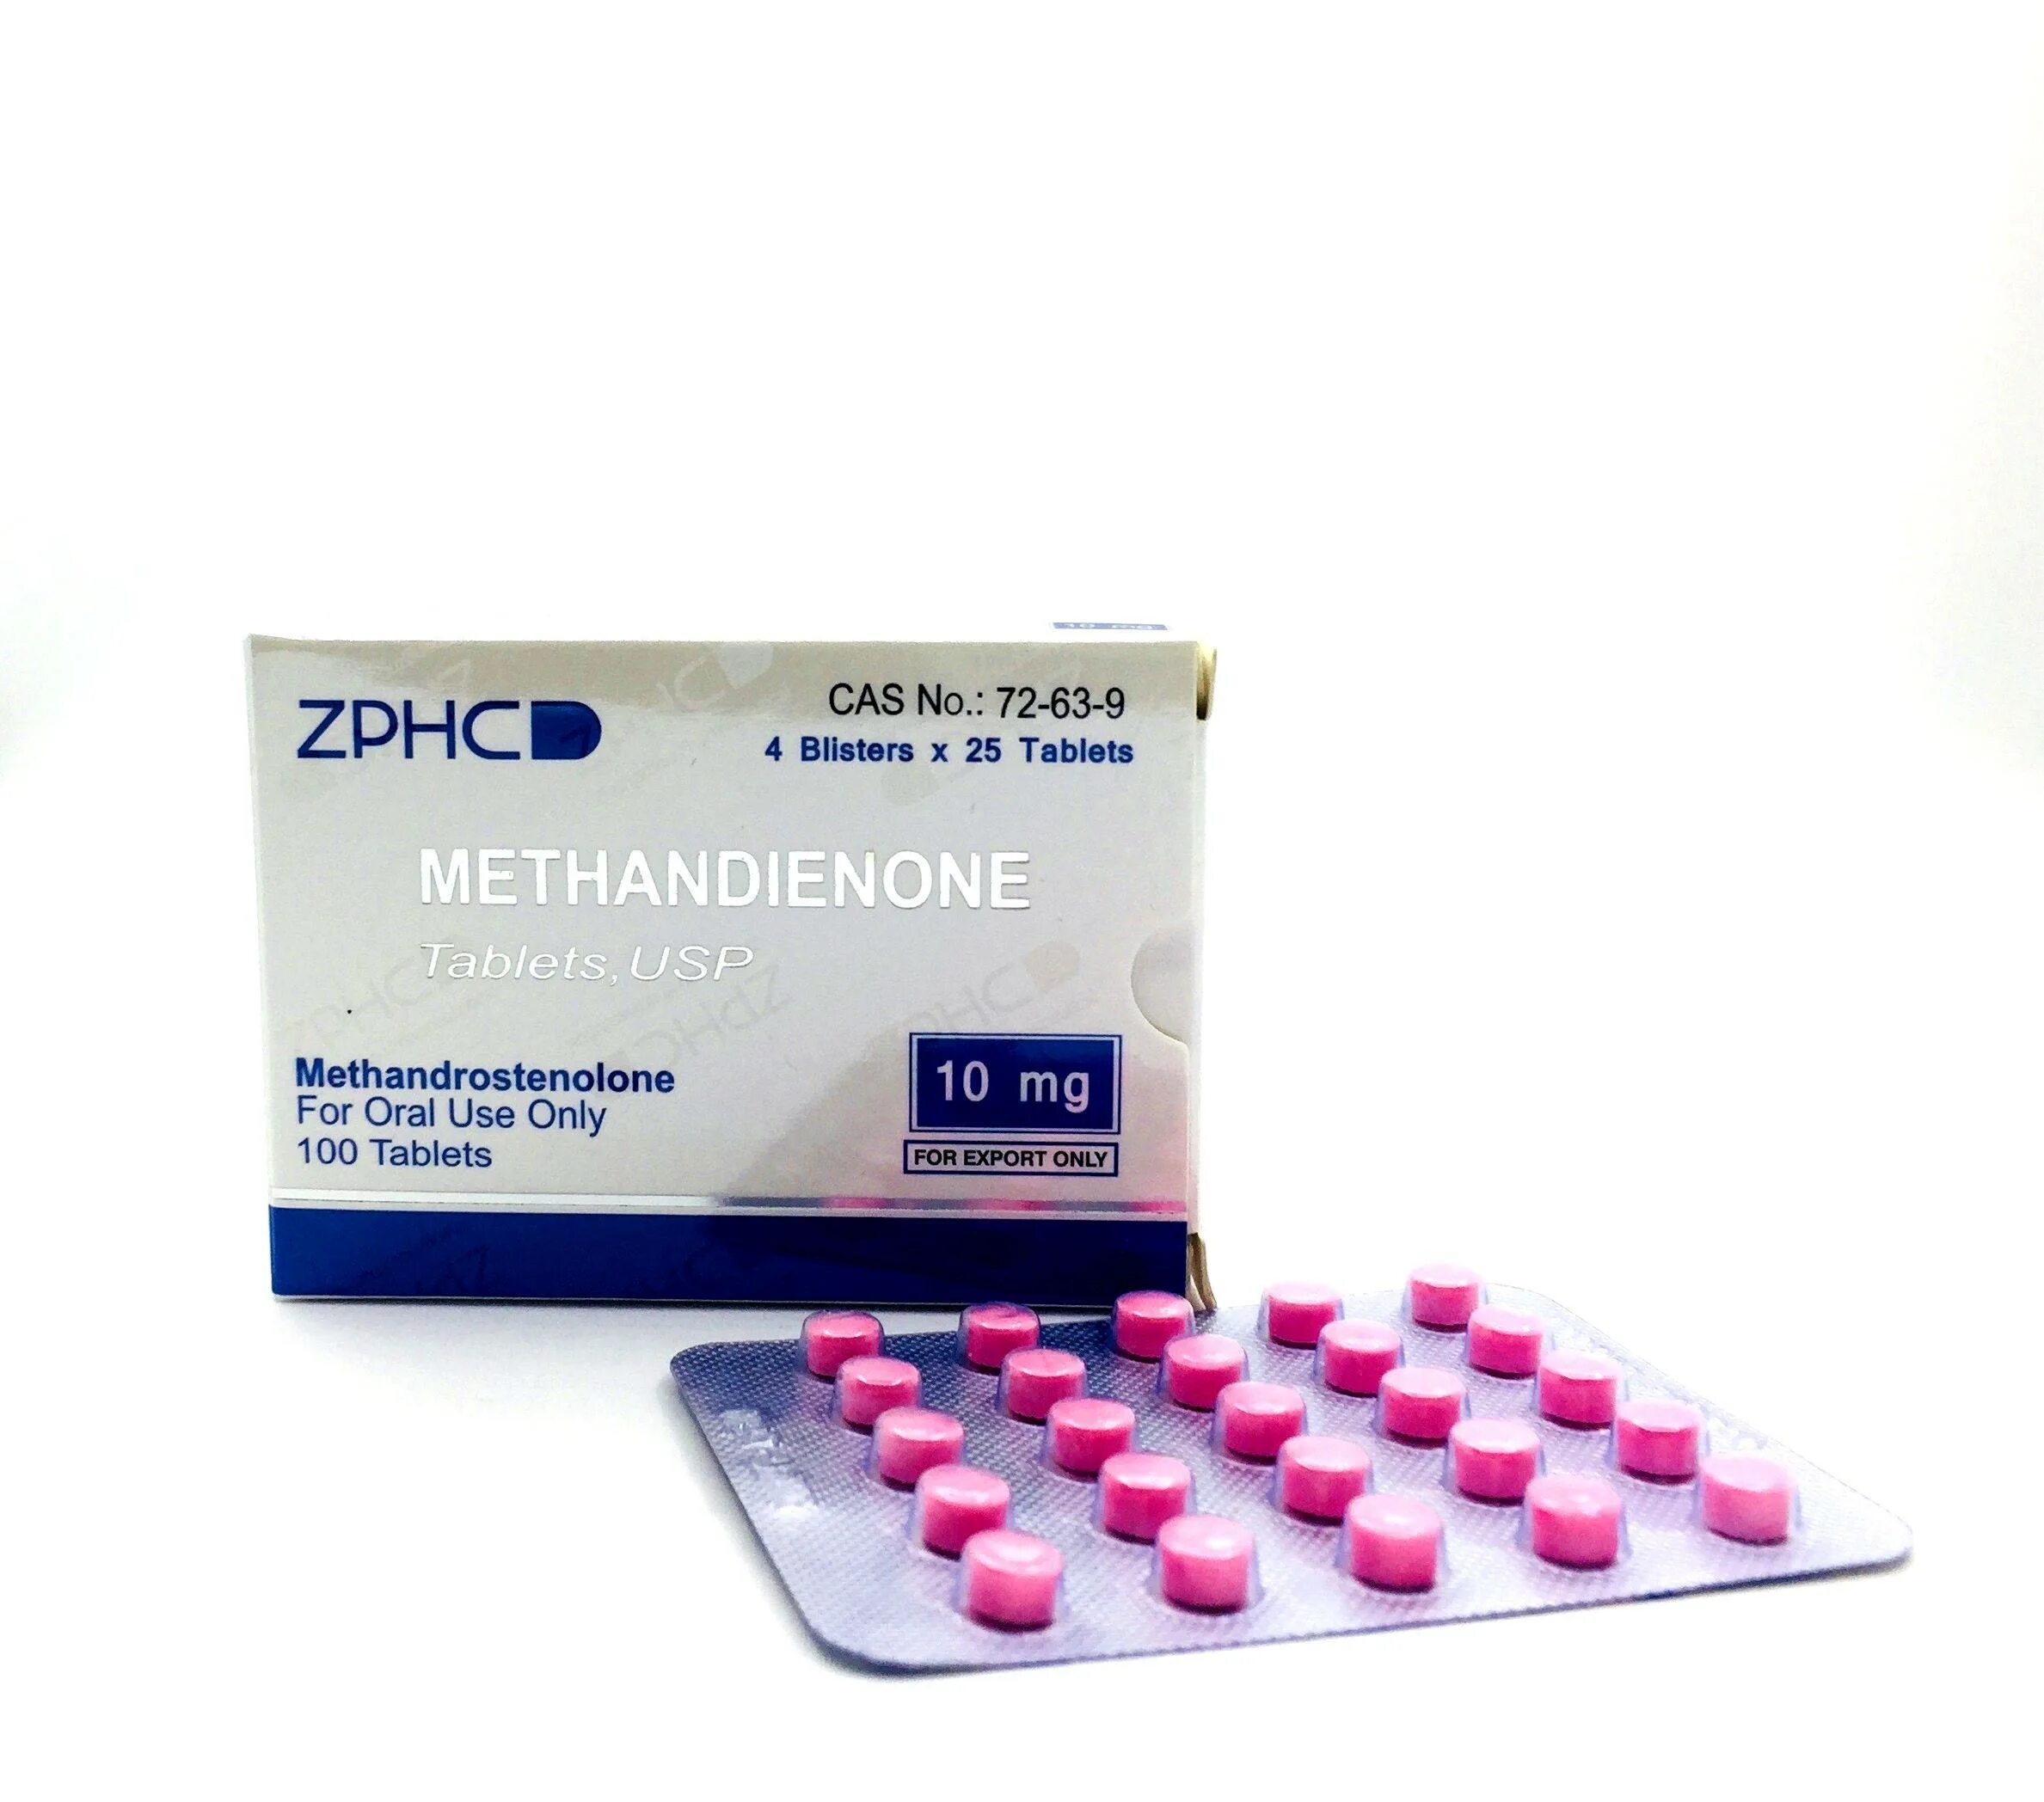 Мета где купить. ZPHC метандиенон 10 мг. ZPHC Methandienone 10mg/100tab. Метан ZPHC 10 мг. Methandienone 10mg (метандиенон), ZPHC.